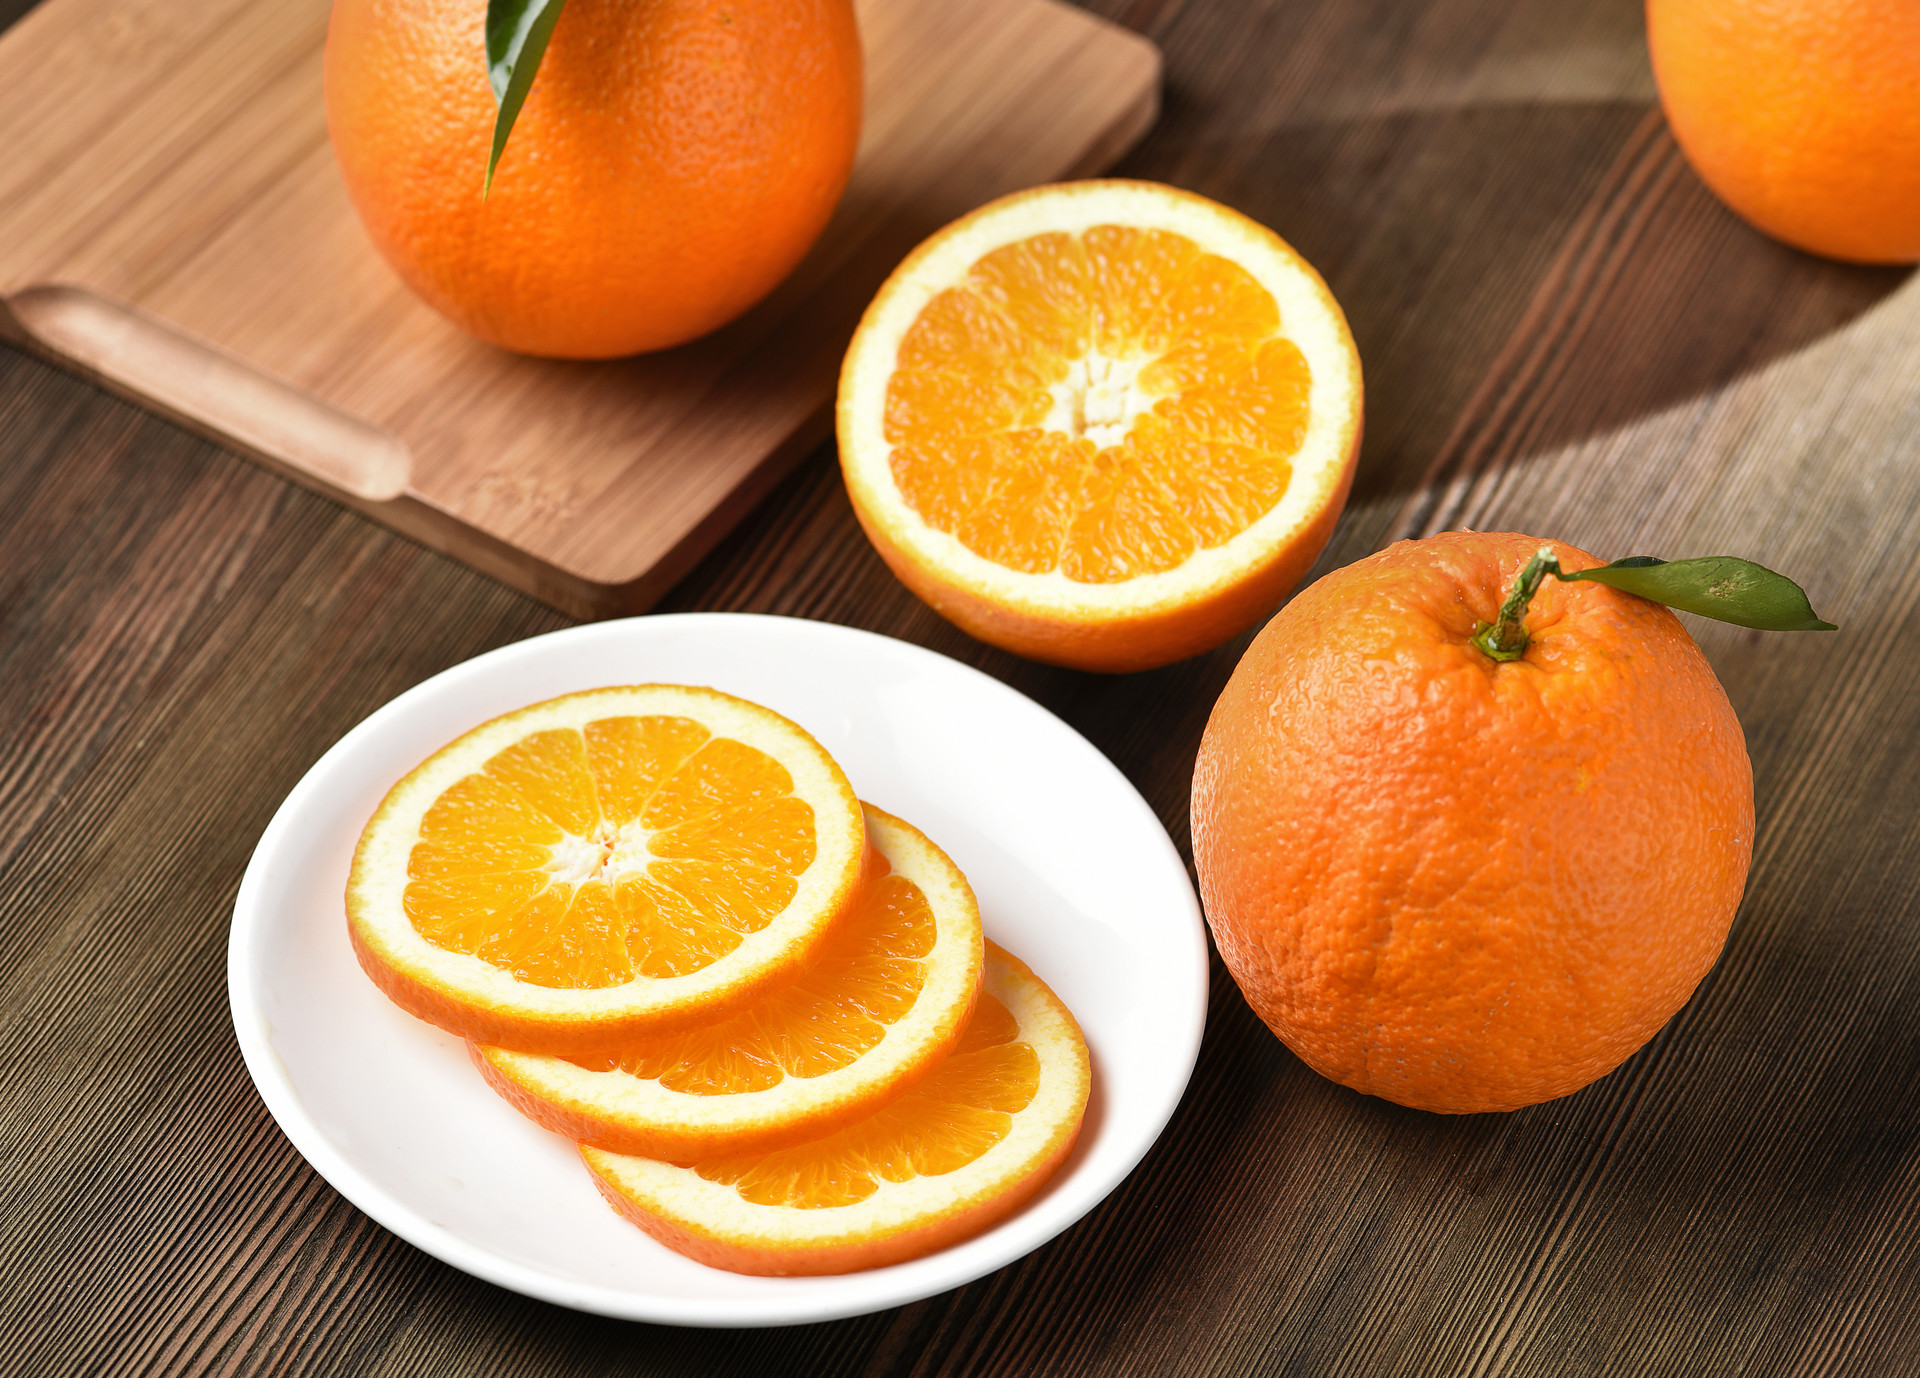 冰糖橙可以保存多久